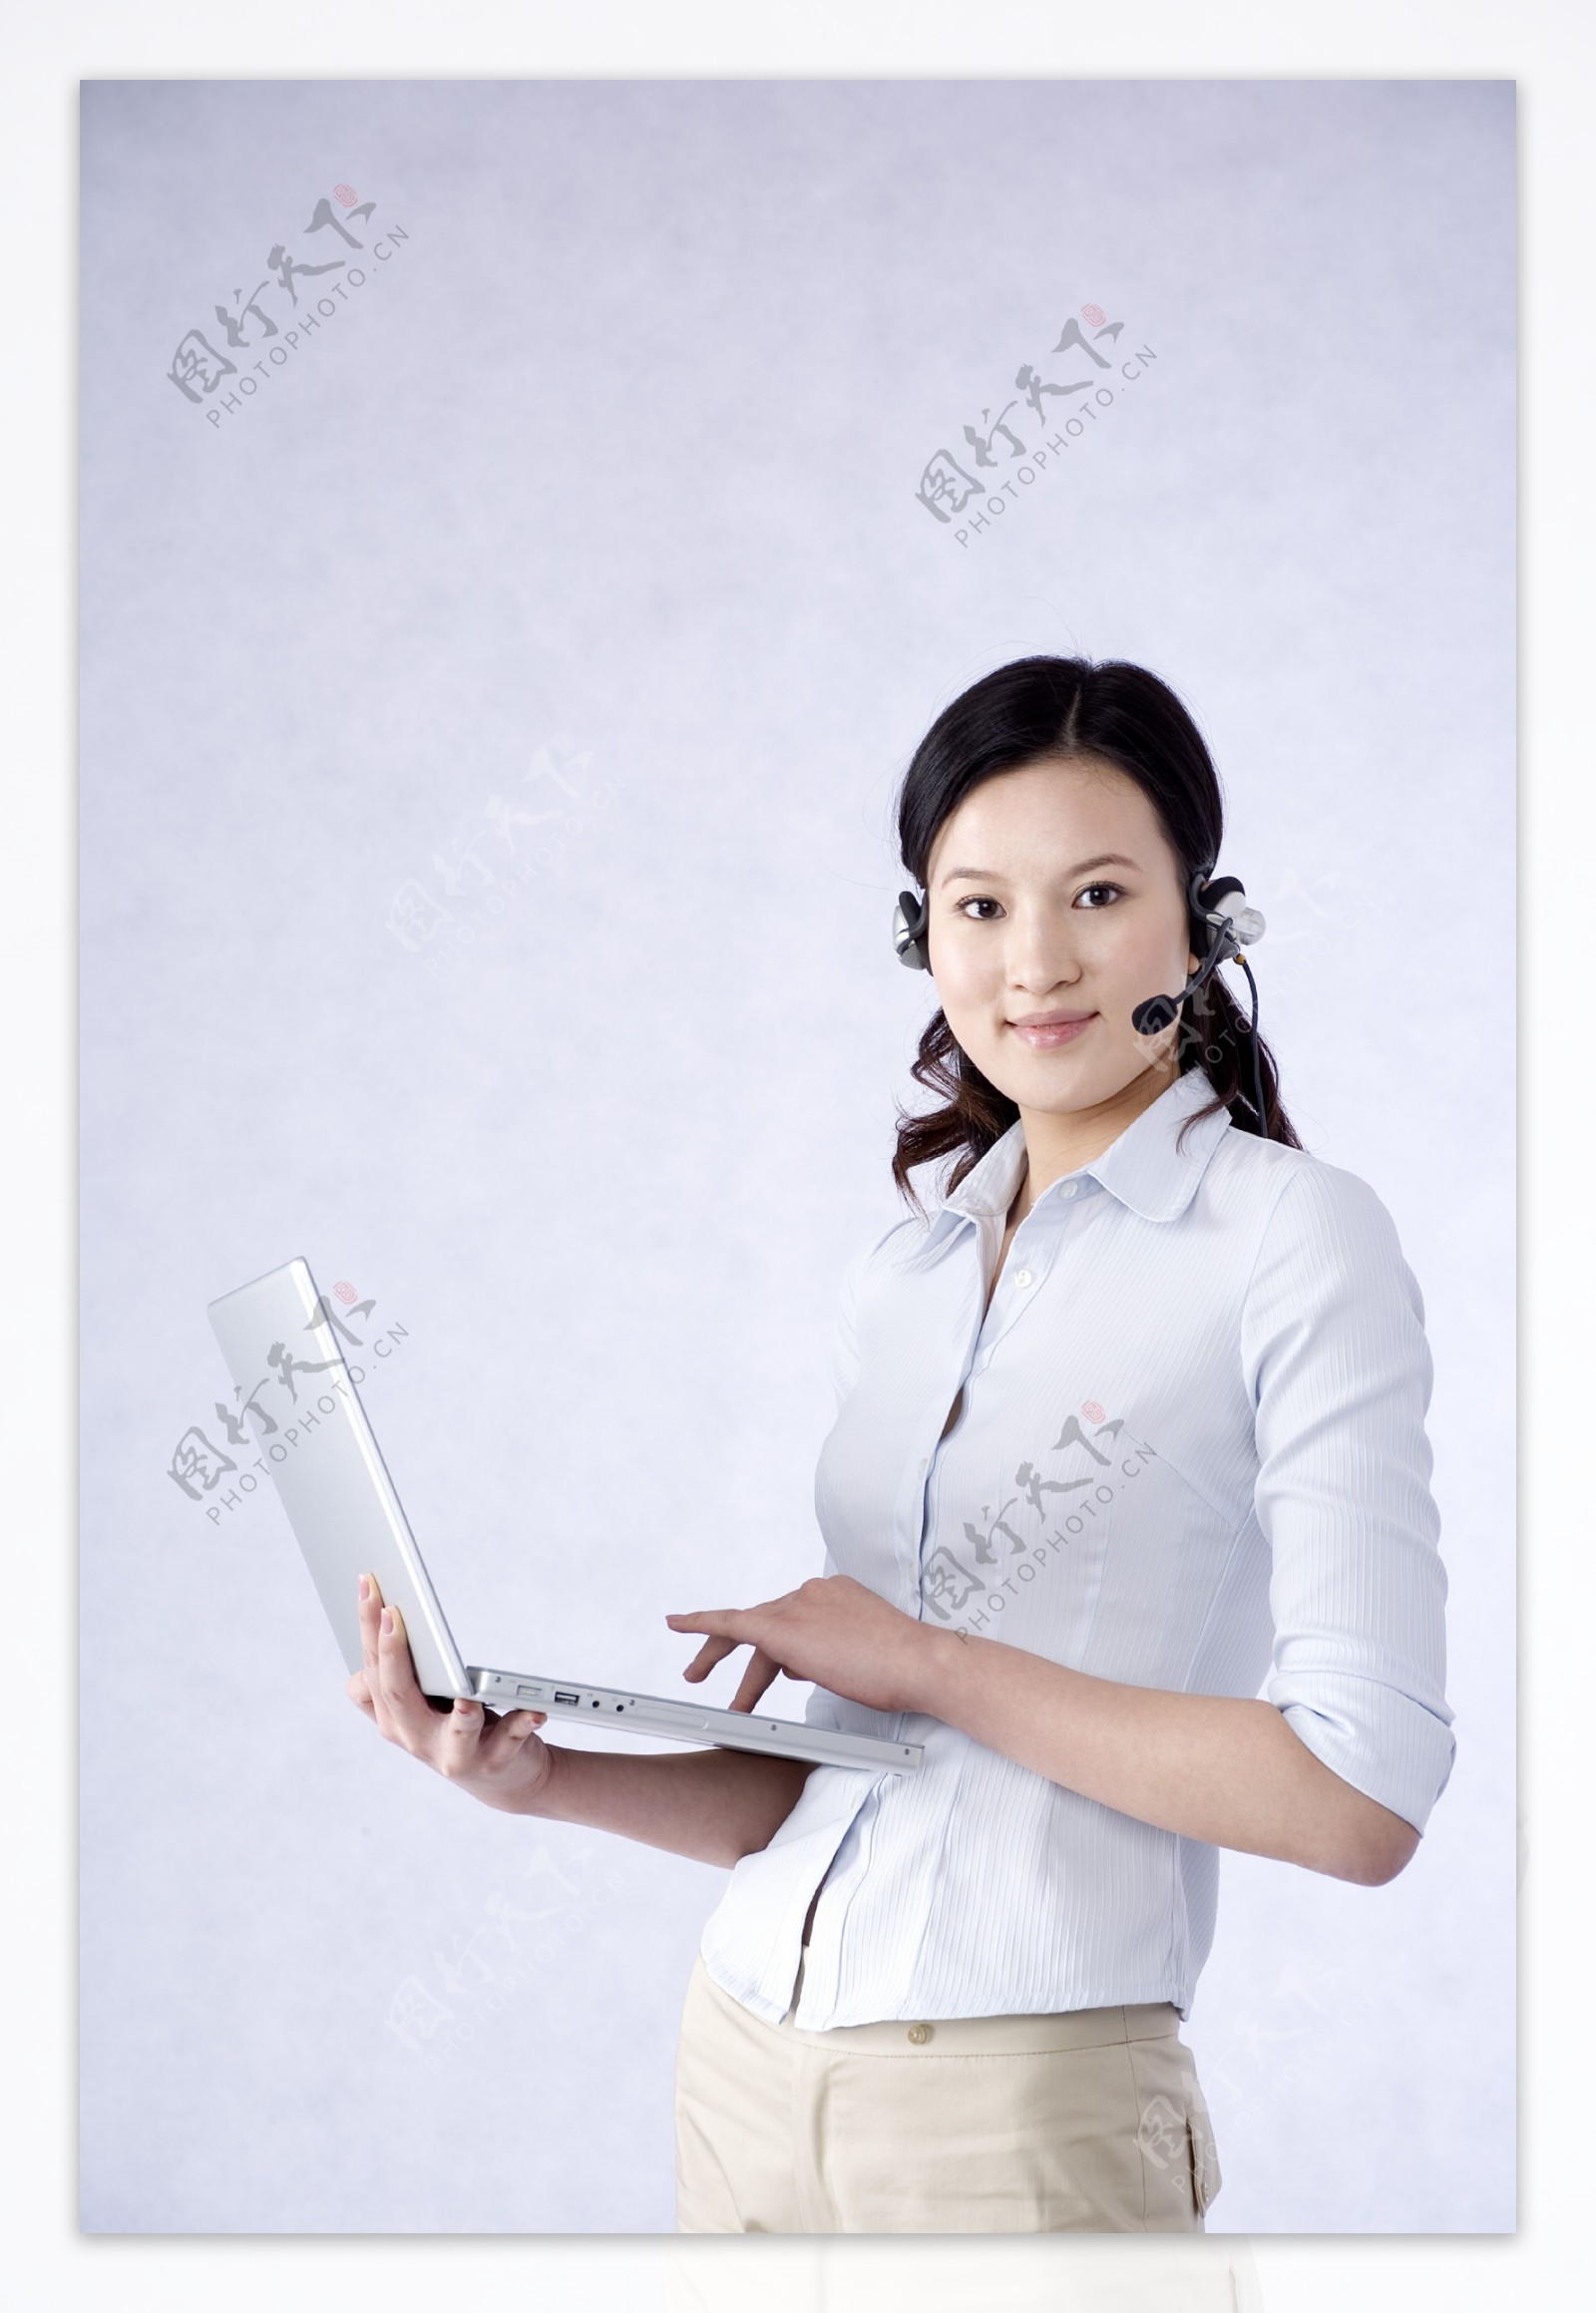 戴着耳麦上网的商务女性图片